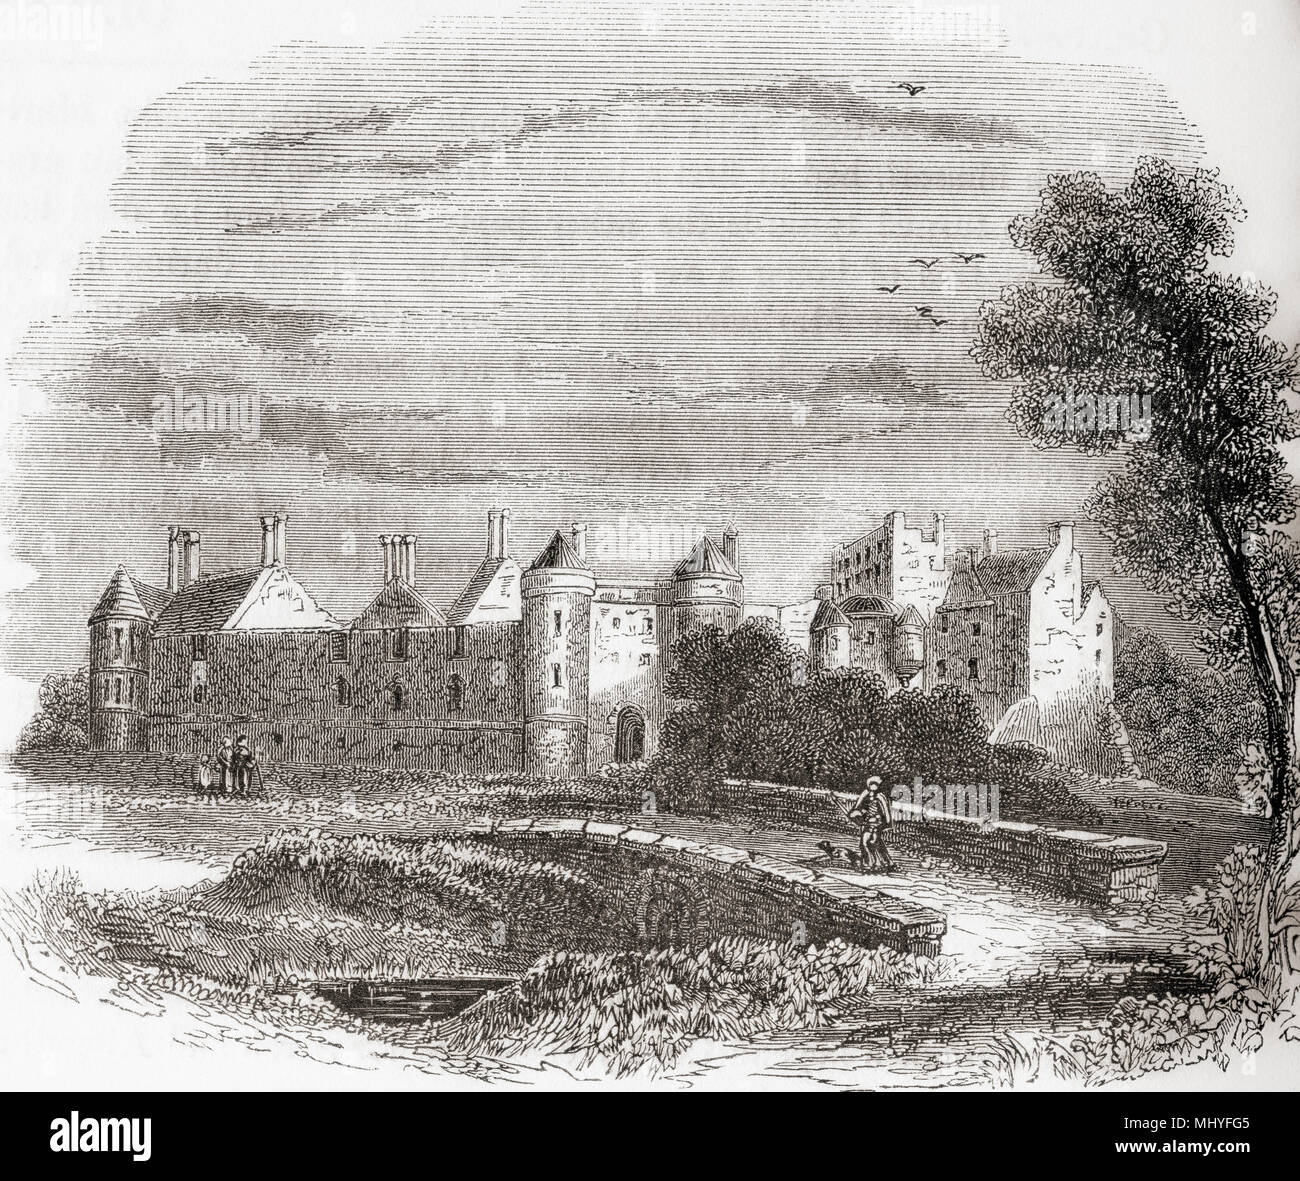 Seton Castle, Seton, Scozia costruito sul sito di Seton palazzo che è stato un rifugio famoso per Maria Regina di Scozia prima di essere demolita nel 1789. Da Vecchia Inghilterra: un museo pittorico, pubblicato nel 1847. Foto Stock